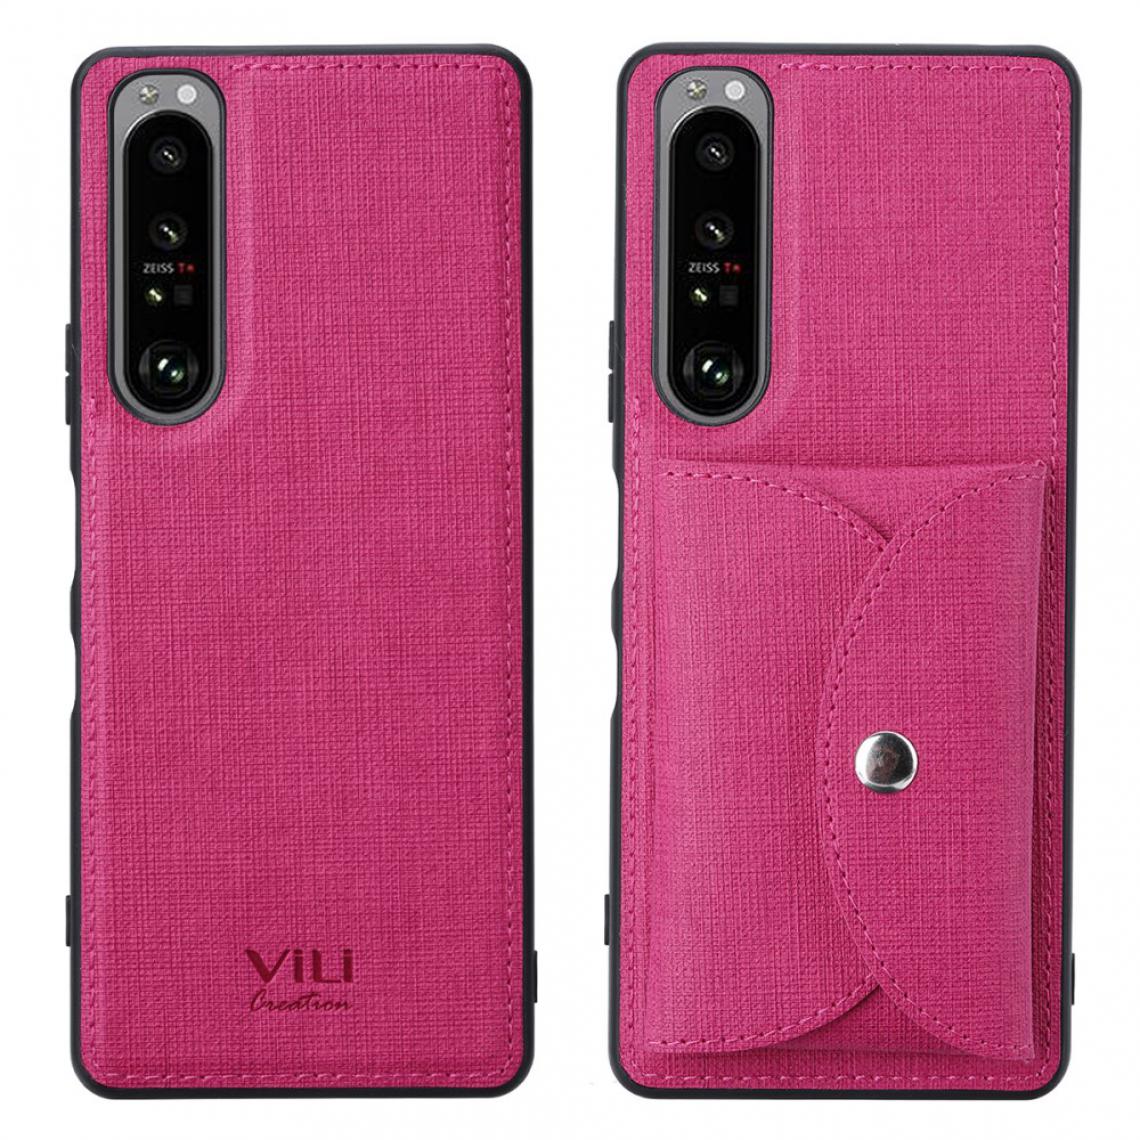 Other - Etui en PU + TPU Peau avec Absorbé Magnétique Mobile rose pour votre Sony Xperia 1 III - Coque, étui smartphone